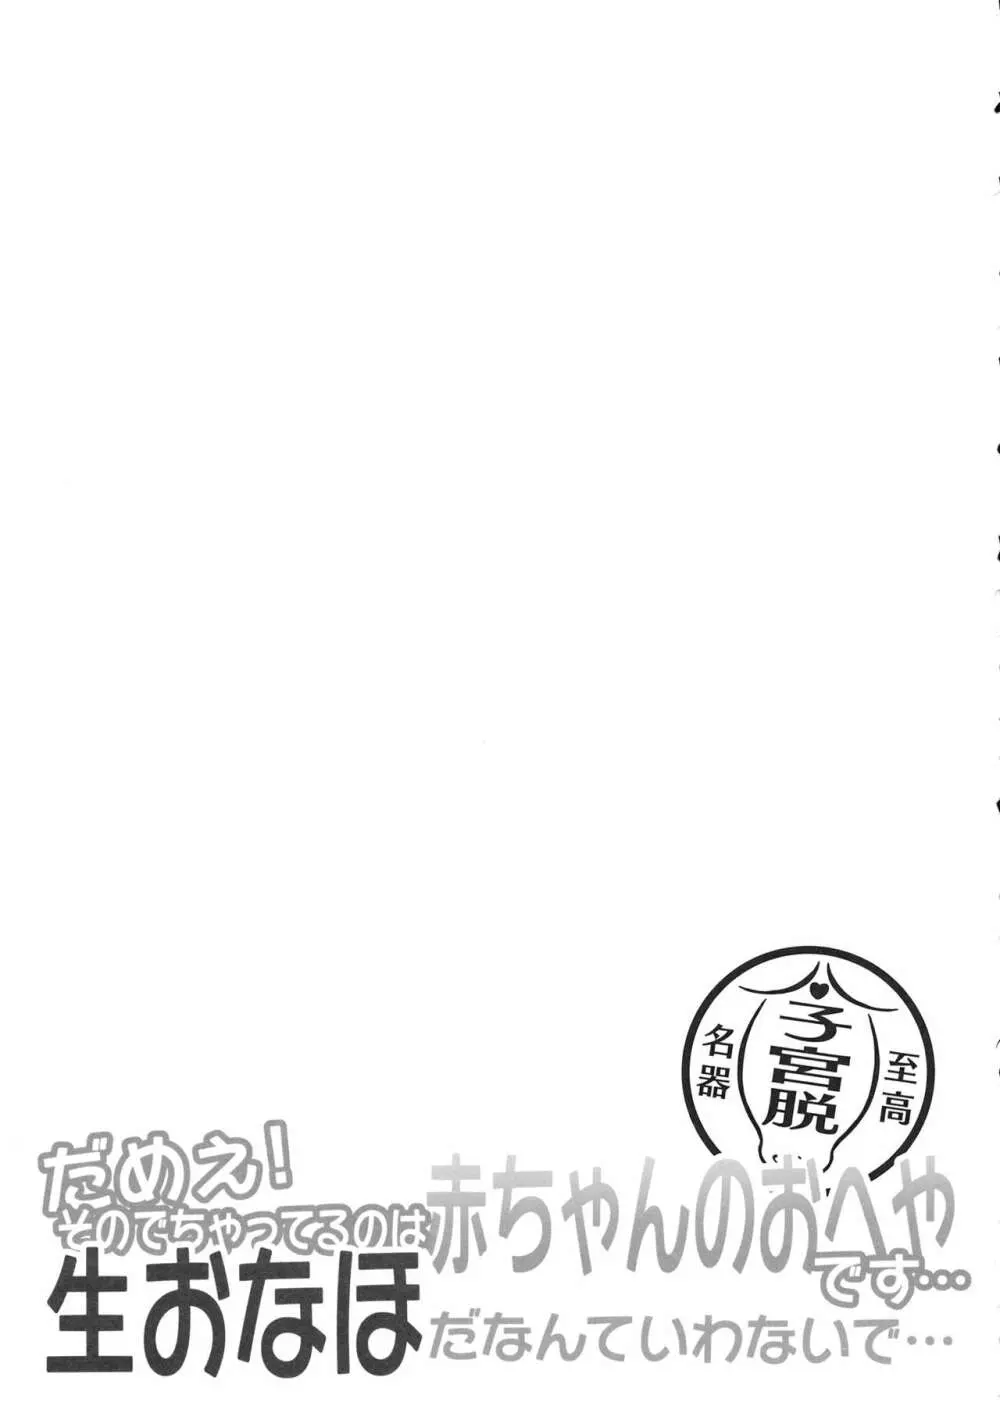 東方子宮脱合同誌2 だめぇ!そのでちゃってるのは赤ちゃんのおへやです…生おなほだなんていわないで… 138ページ